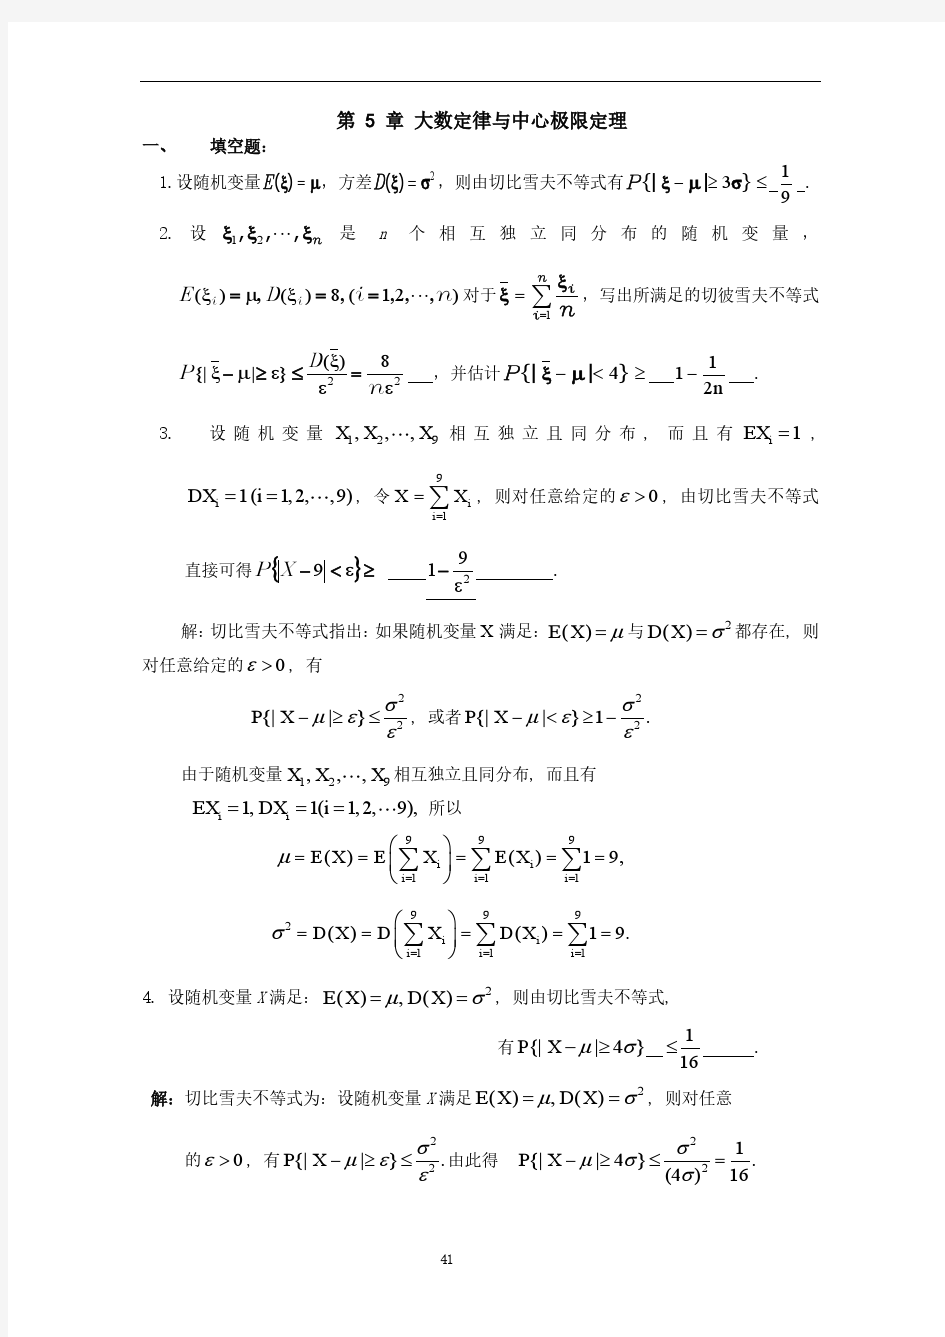 天津理工大学概率论与数理统计第五章习题答案详解